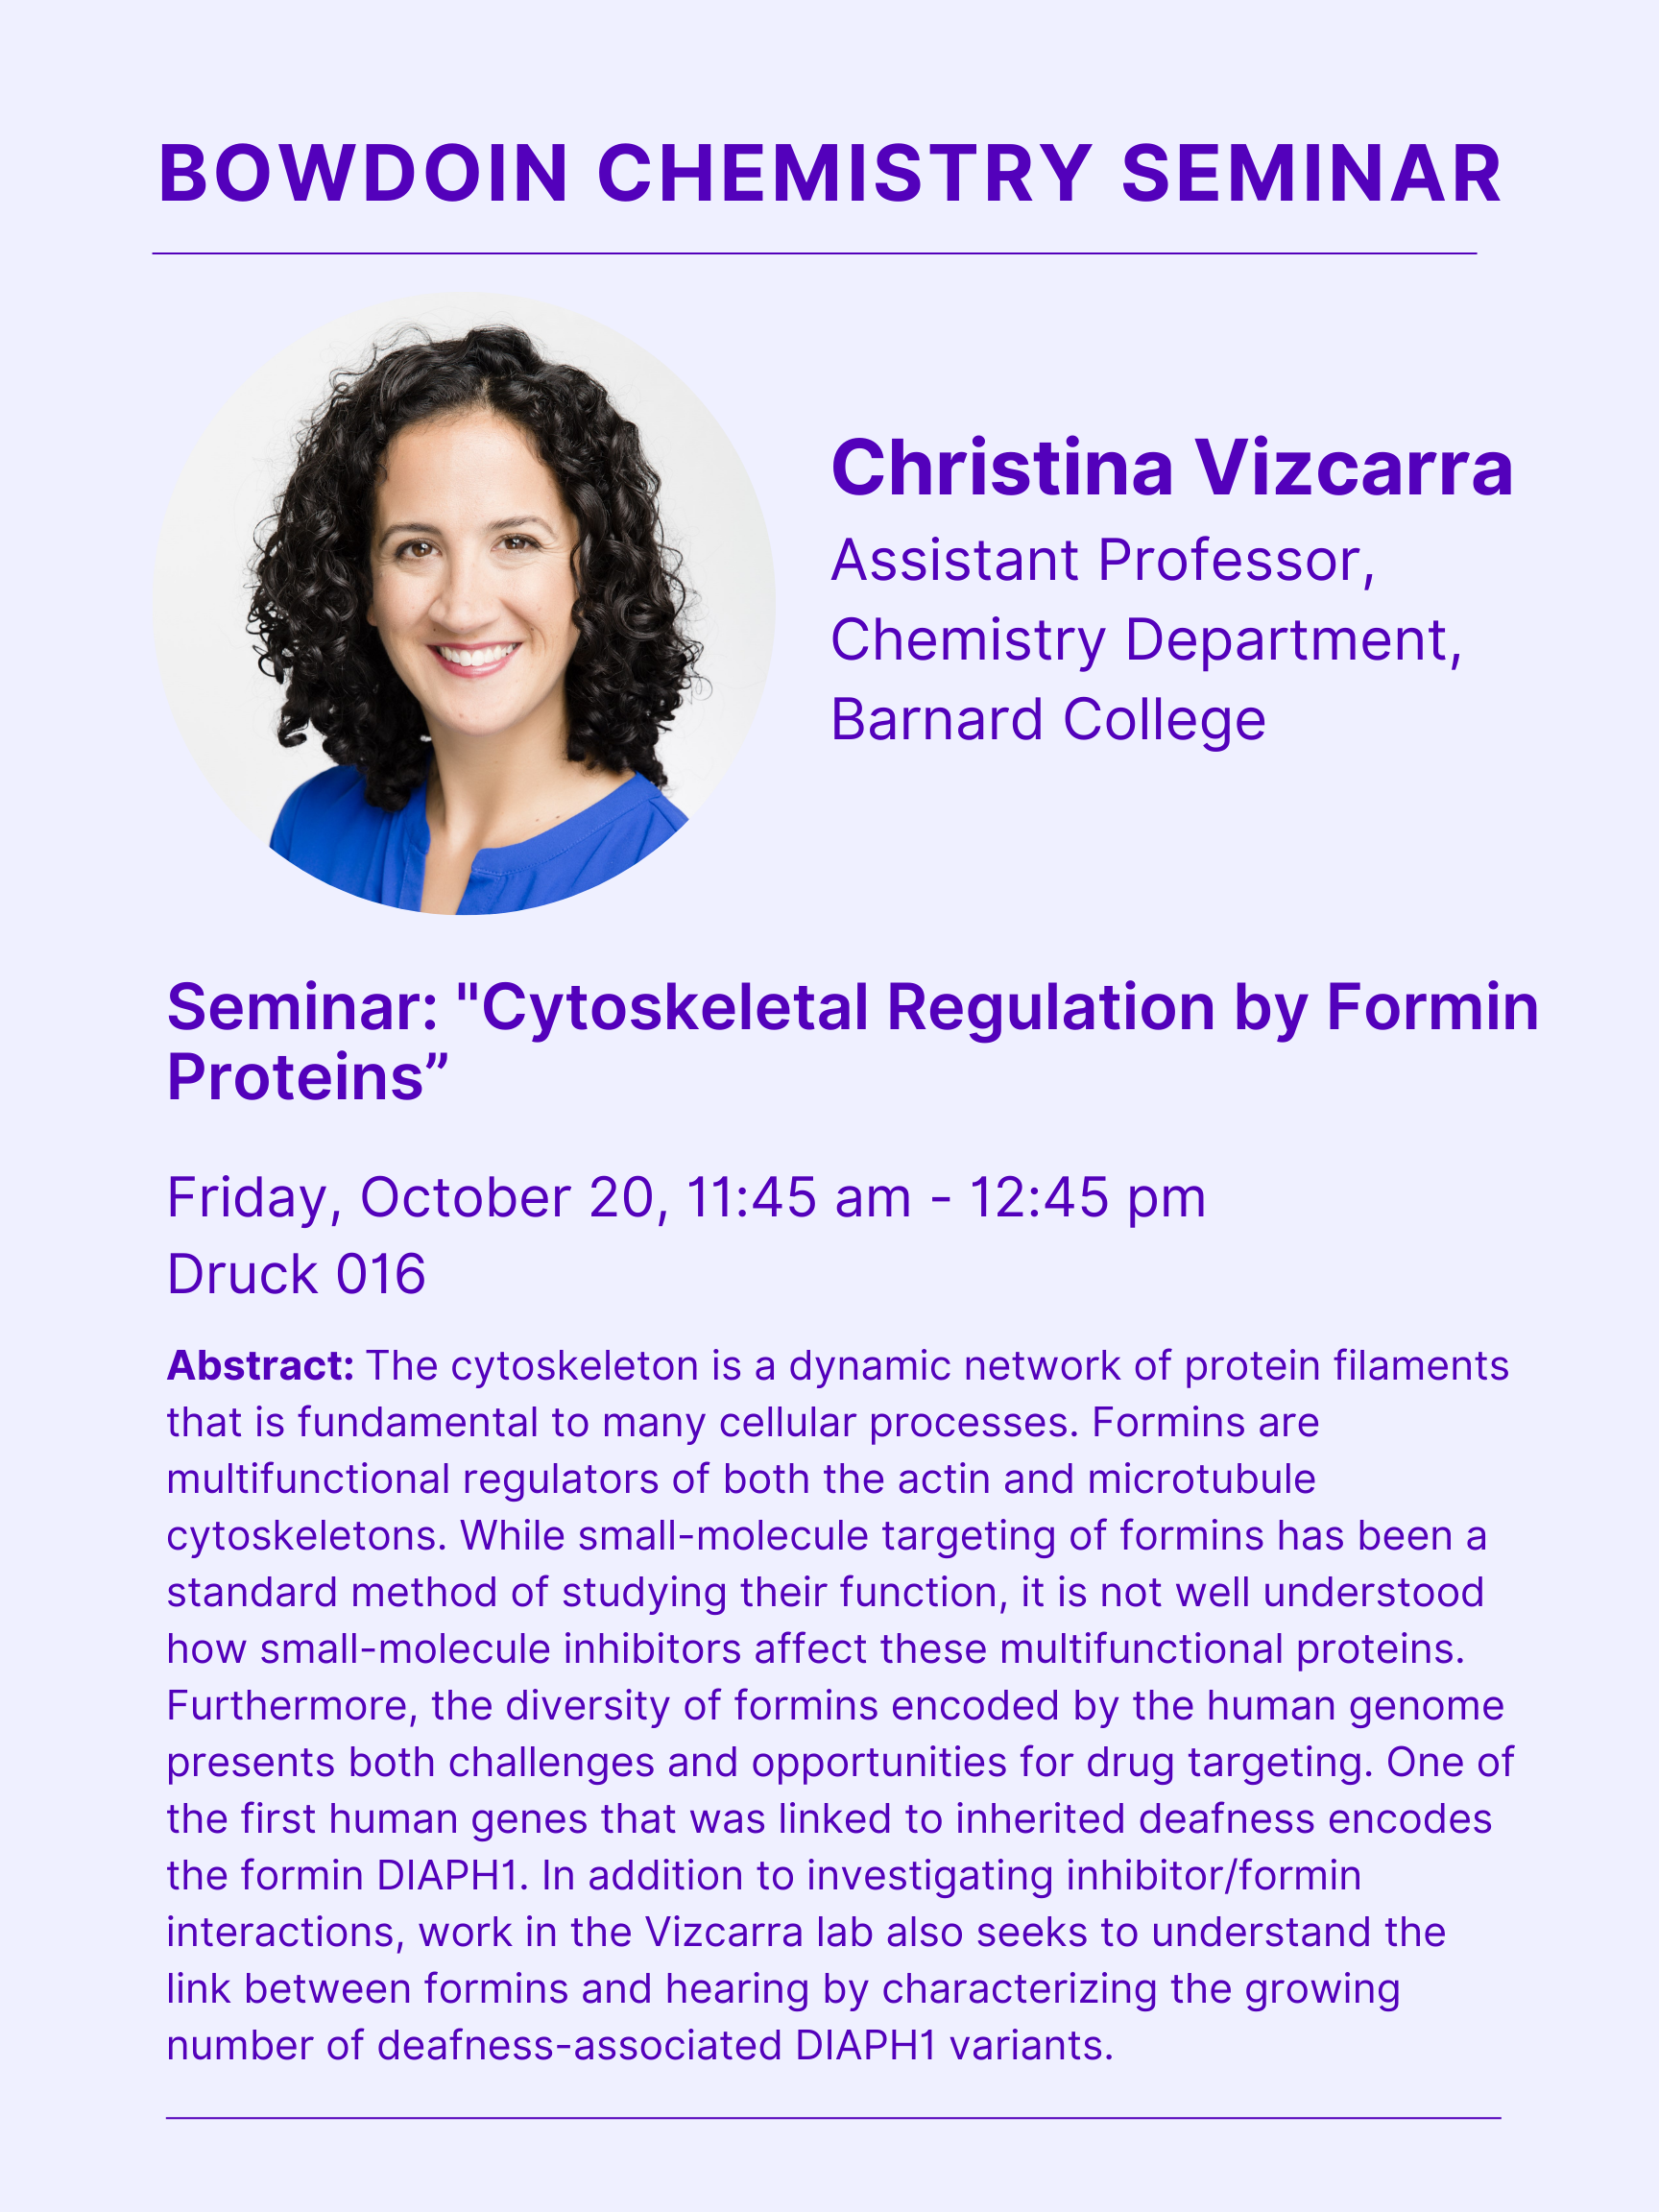 Christina Vizcarra Seminar Poster